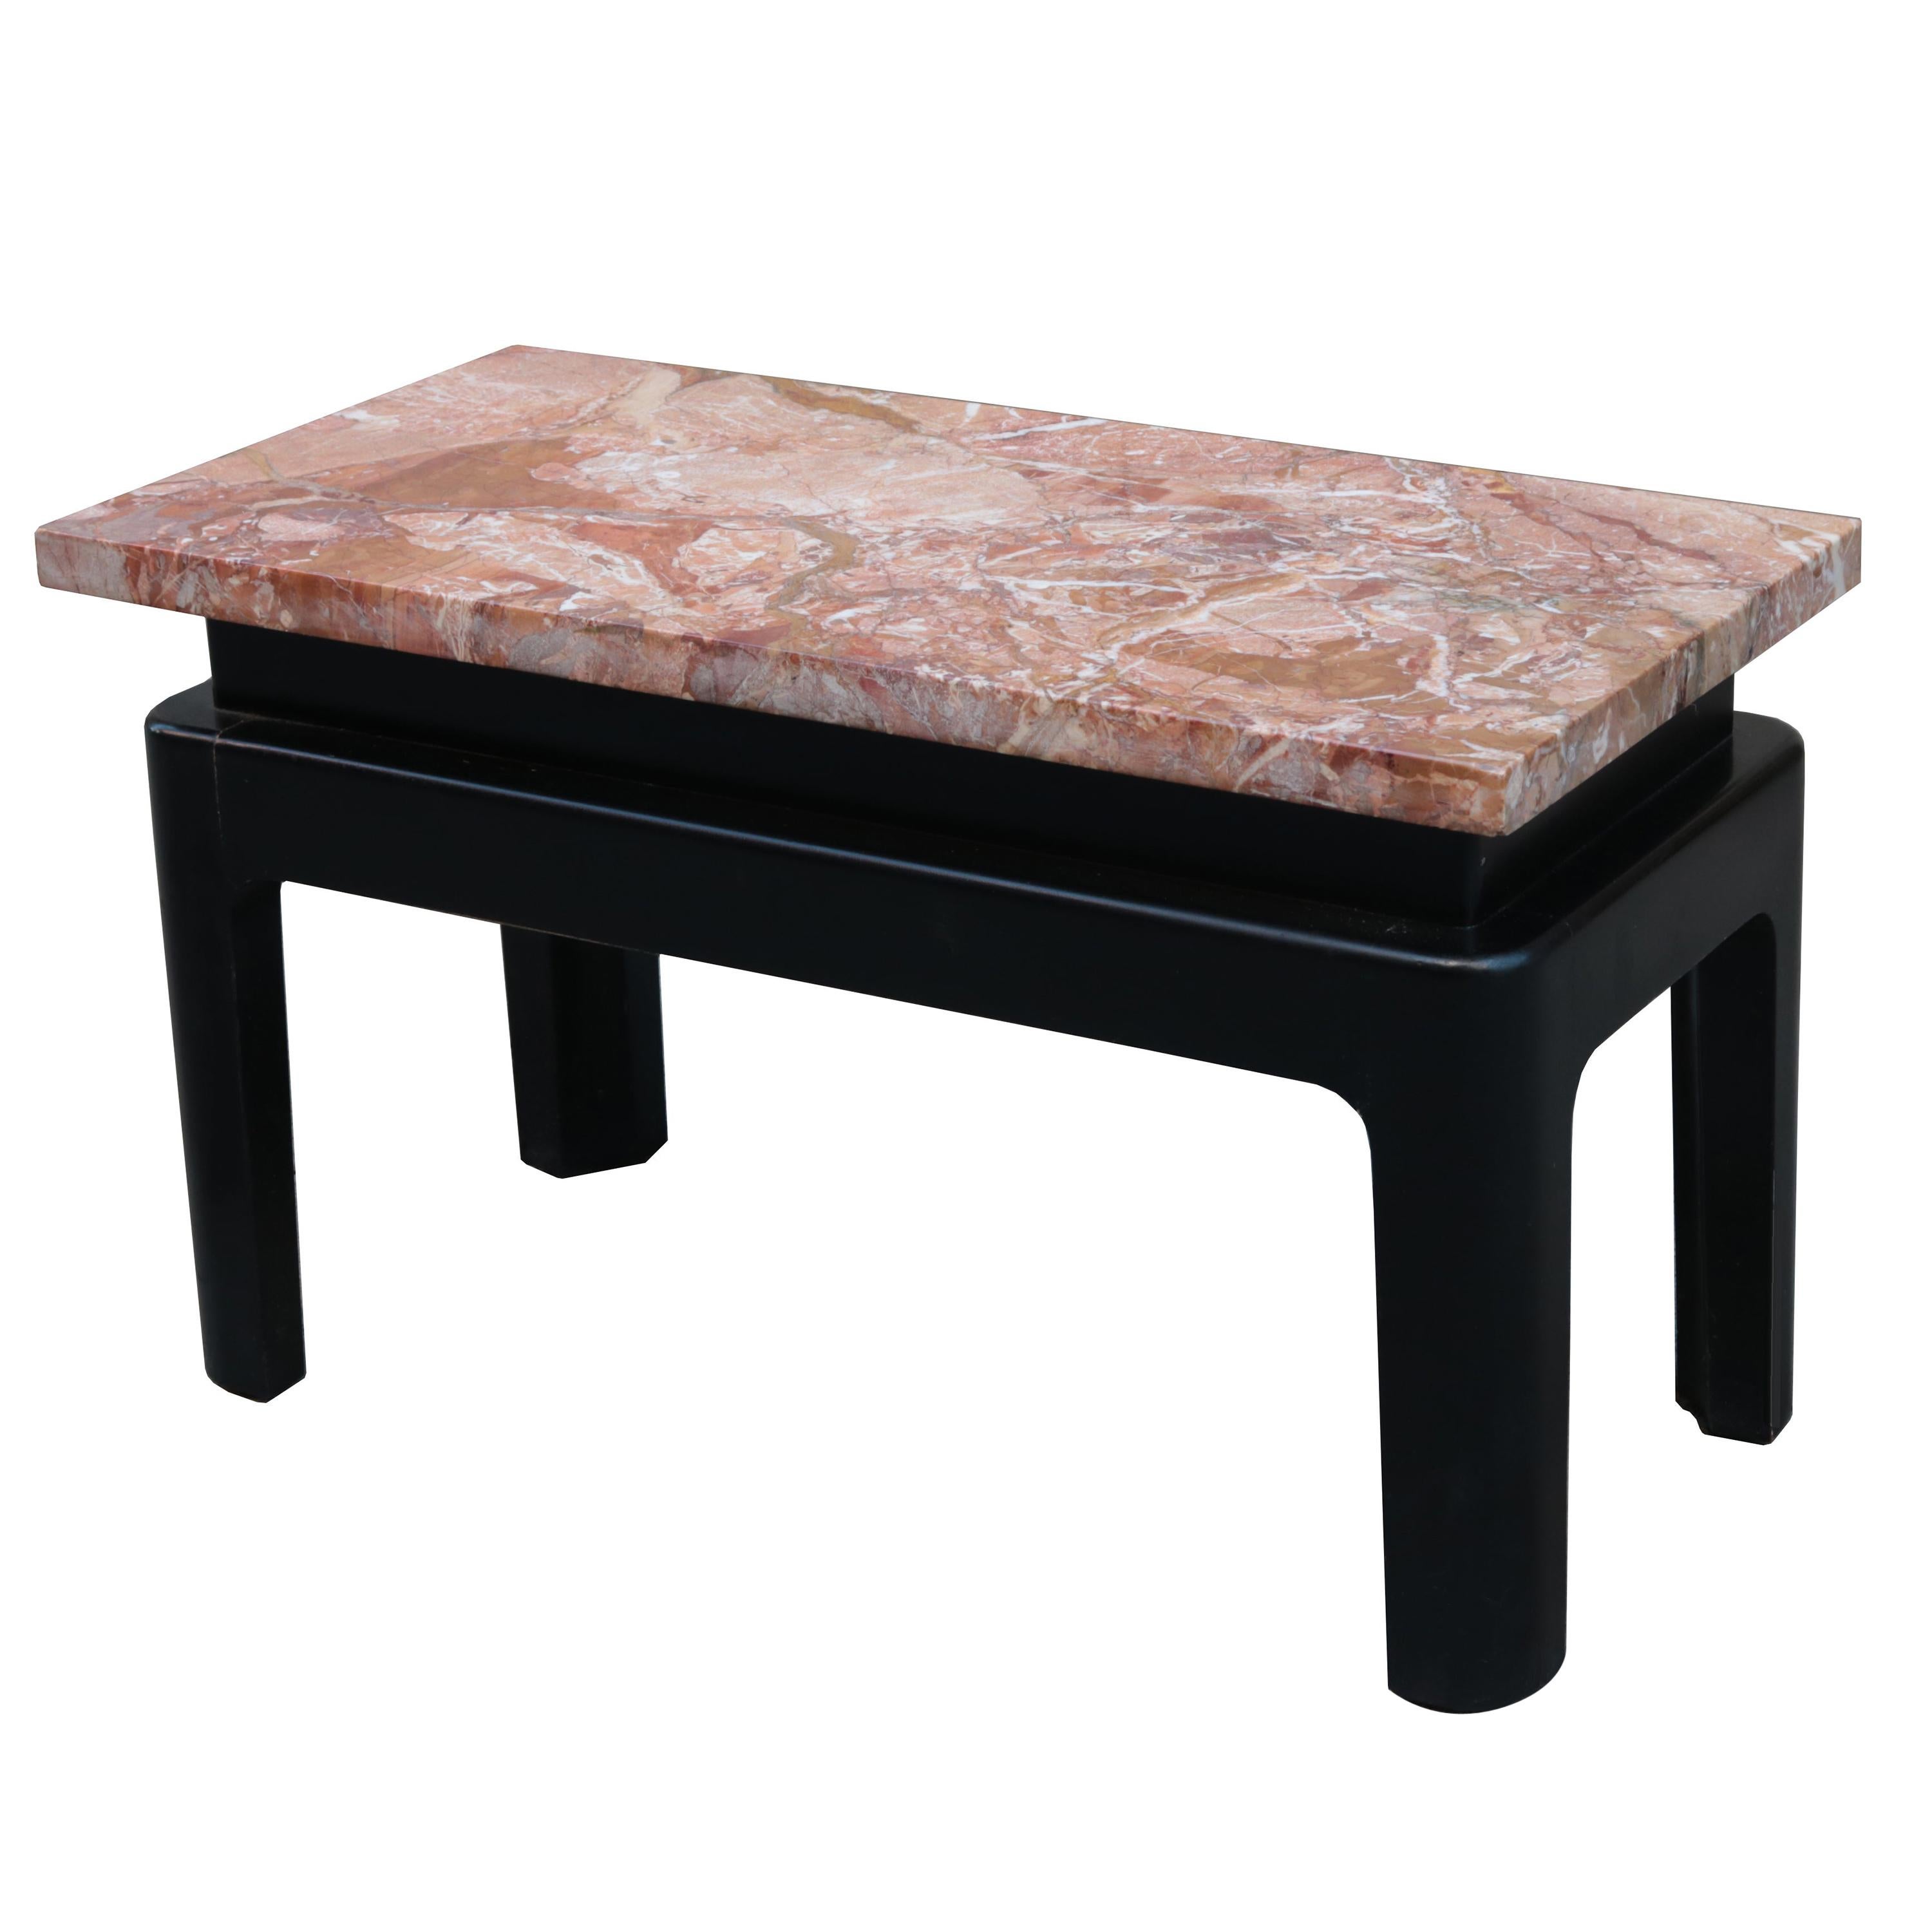 Petite table d'appoint basse à plateau de marbre